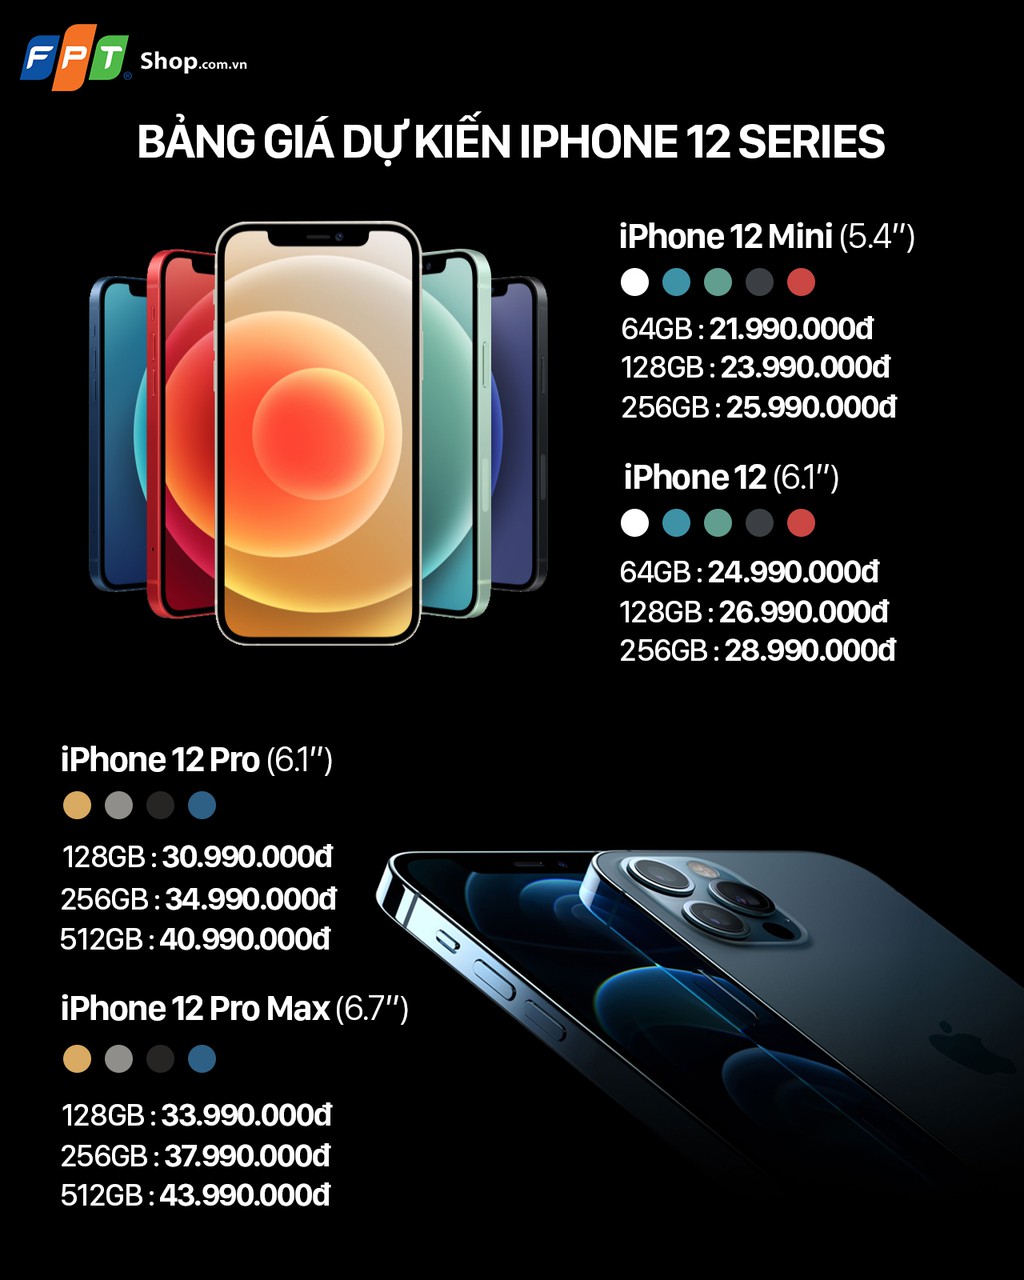 iPhone 12 sẽ chính thức lên kệ vào tháng 12, giá dự kiến từ 22 triệu  ảnh 1